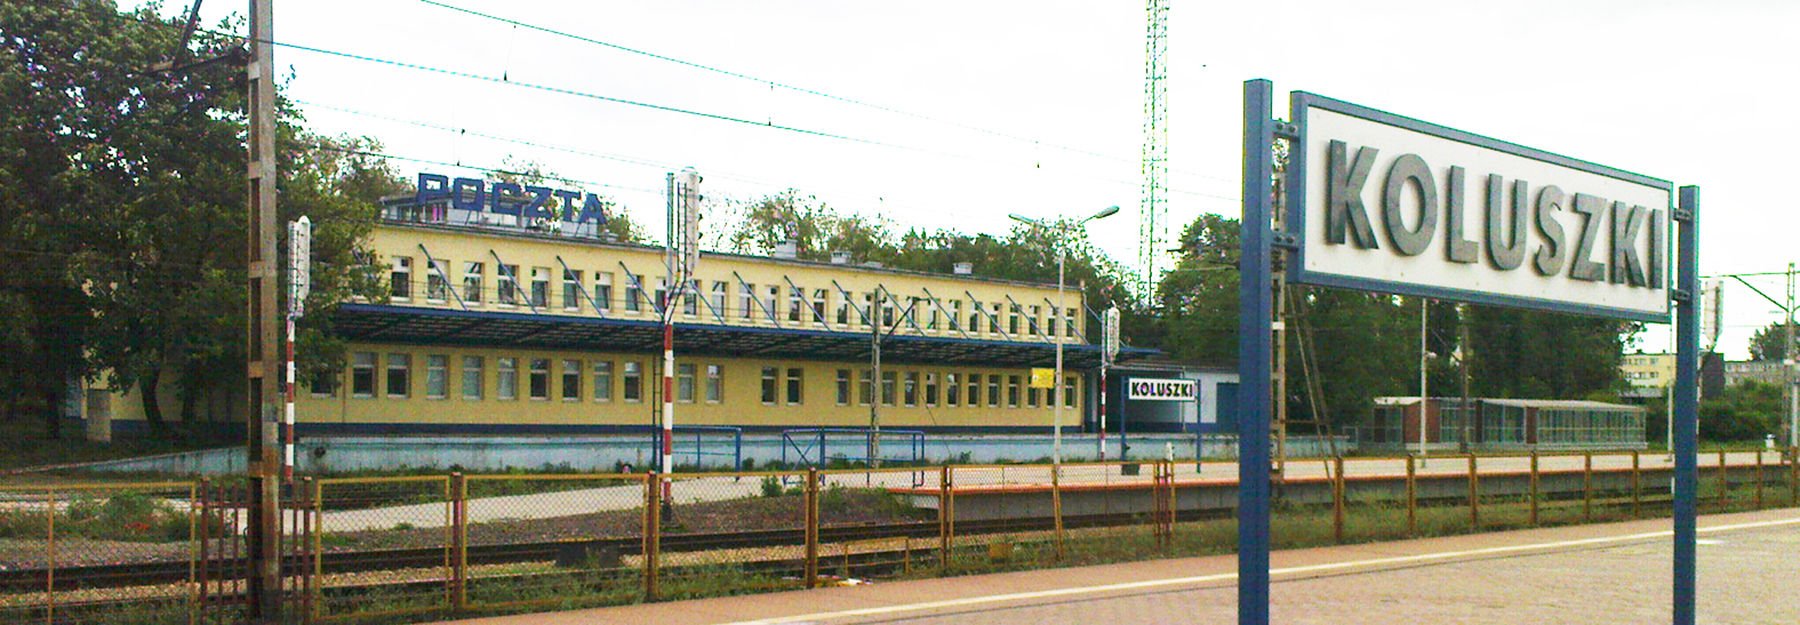 Koluszki poczta dworzec panorama.jpg